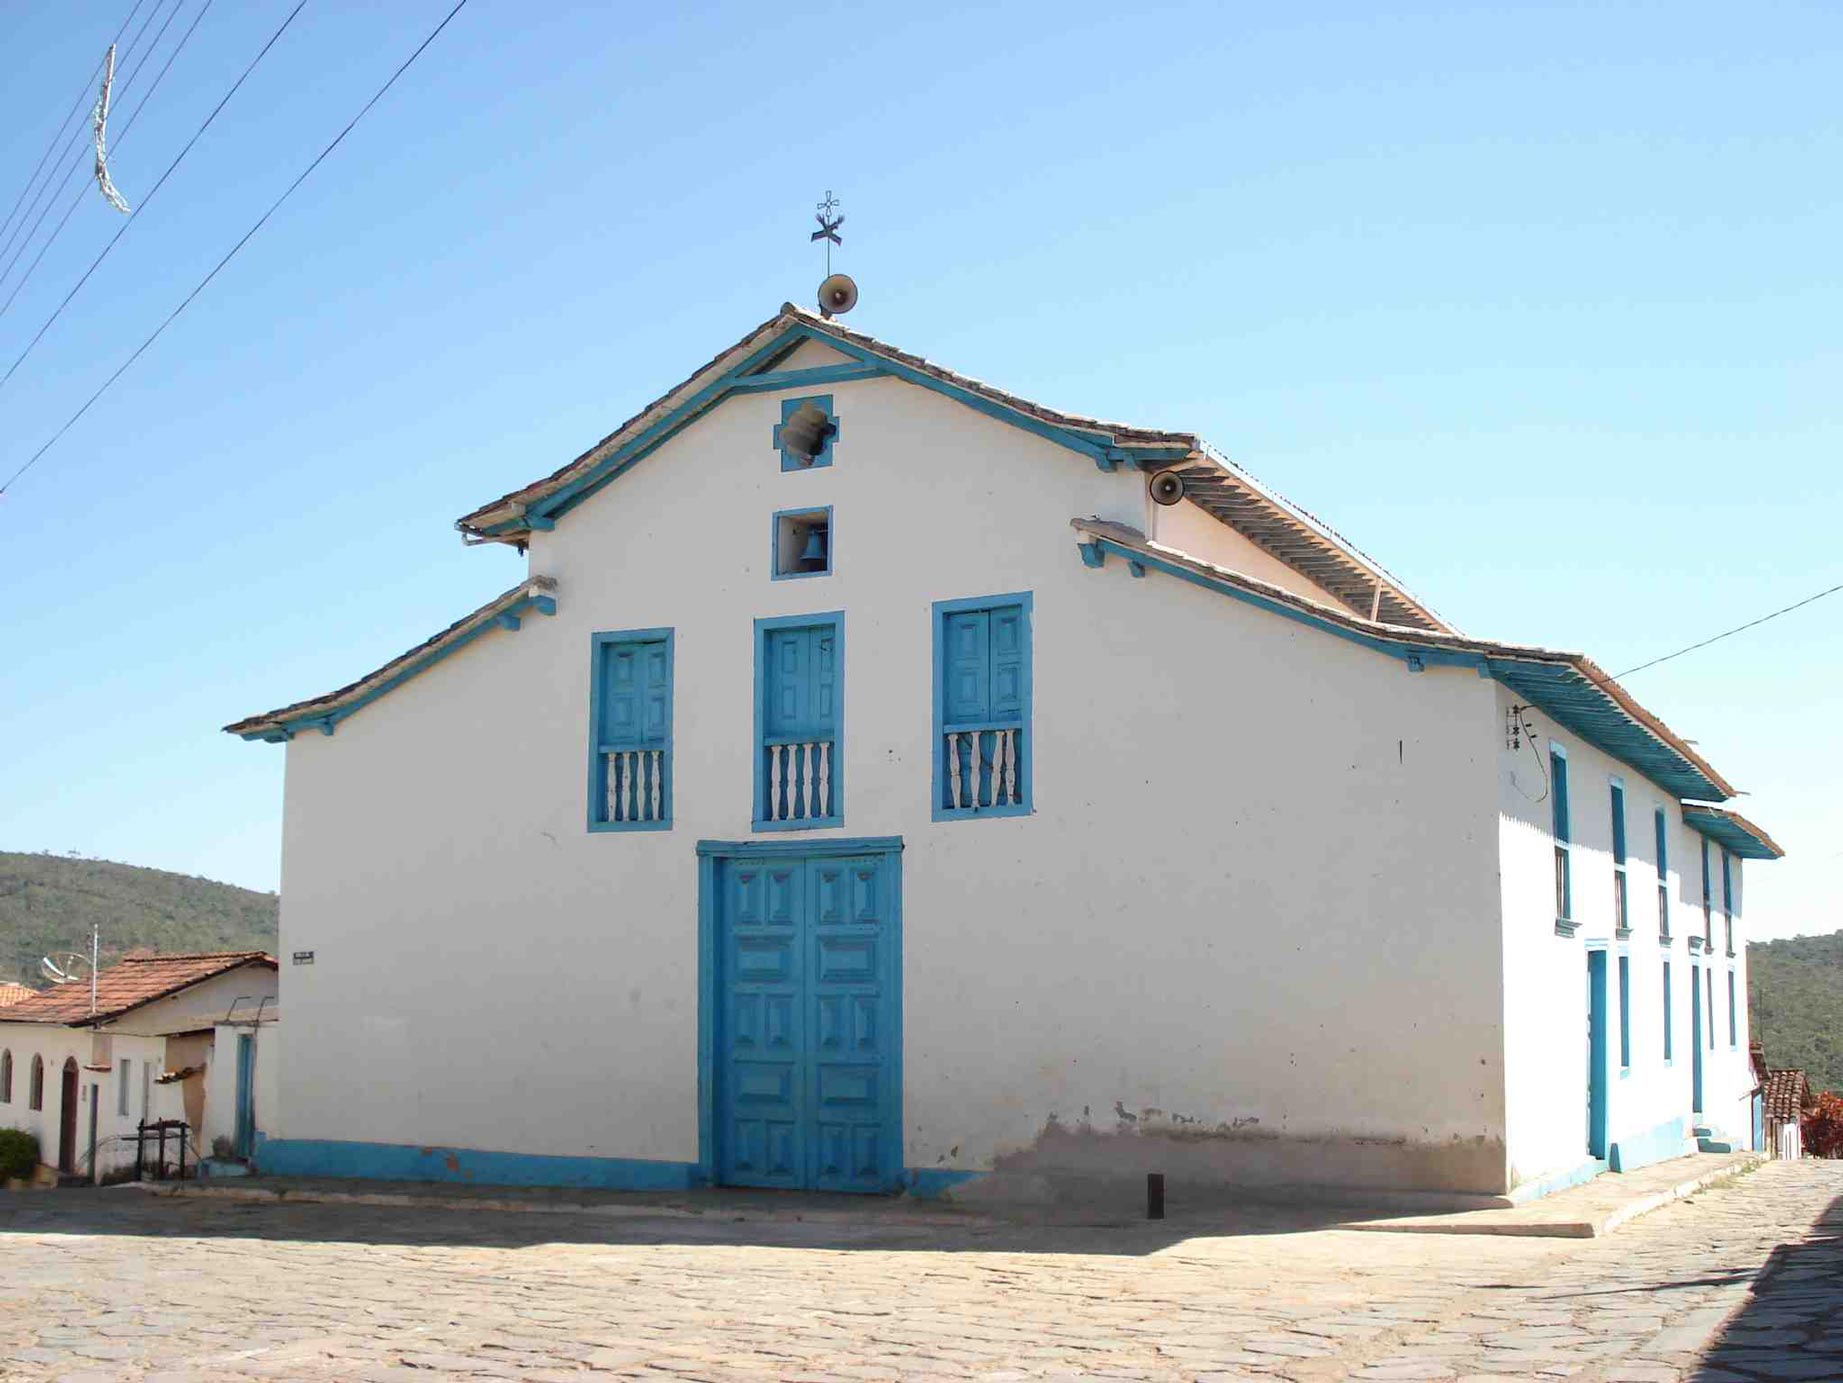 Igreja nova - Ijaci - Minas Gerais 